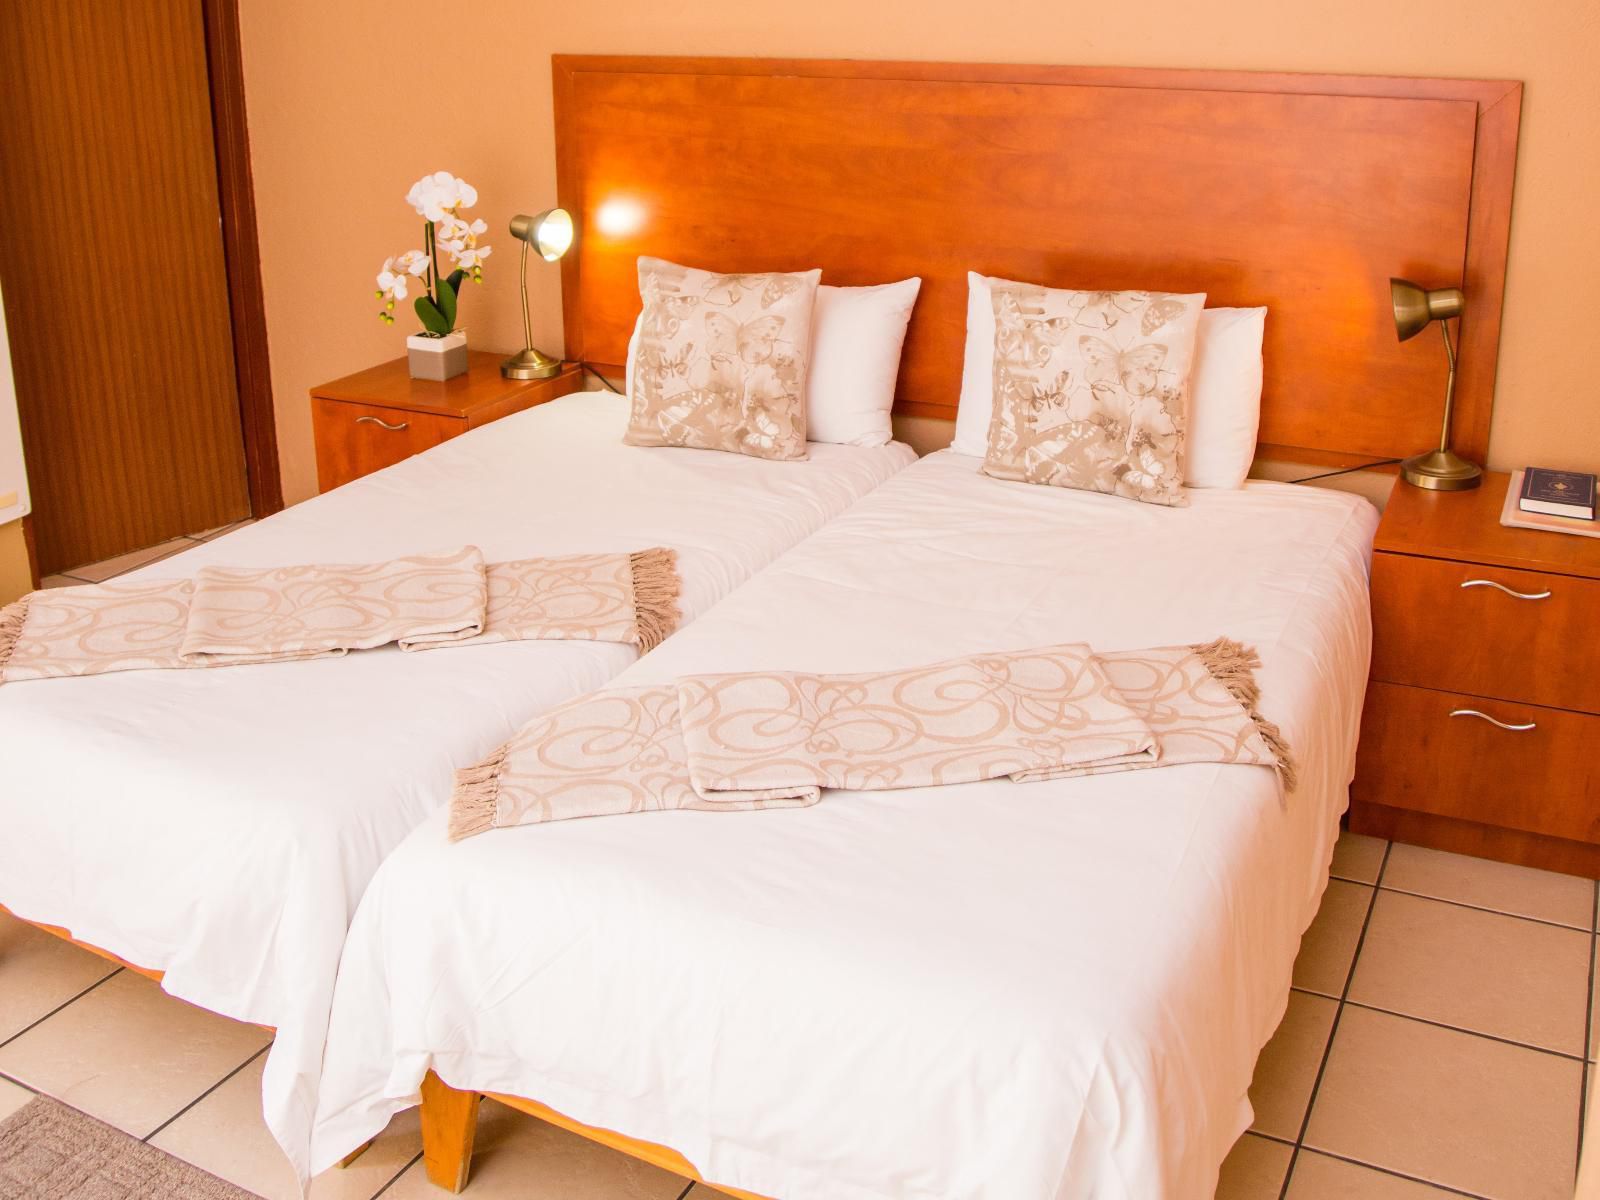 Ekhaya Nelspruit Guest House West Acres Nelspruit Mpumalanga South Africa Colorful, Bedroom